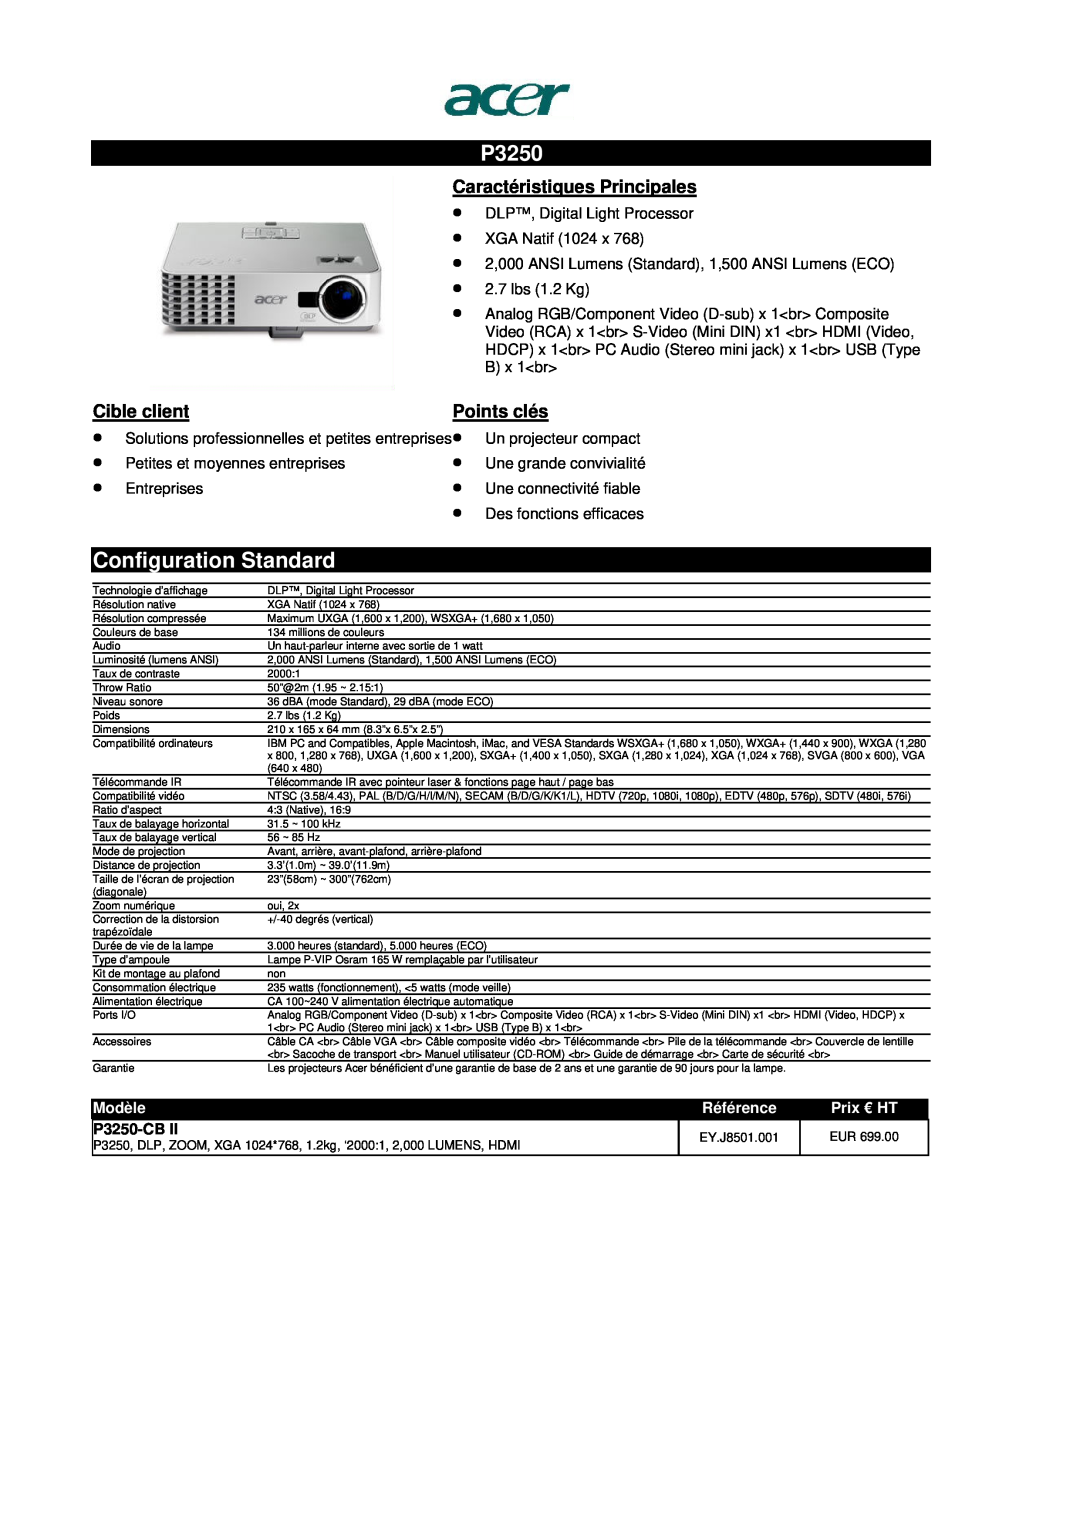 Acer S1200 manual P3250-CB, Configuration Standard, Caractéristiques Principales, Cible client, Points clés, Modèle 